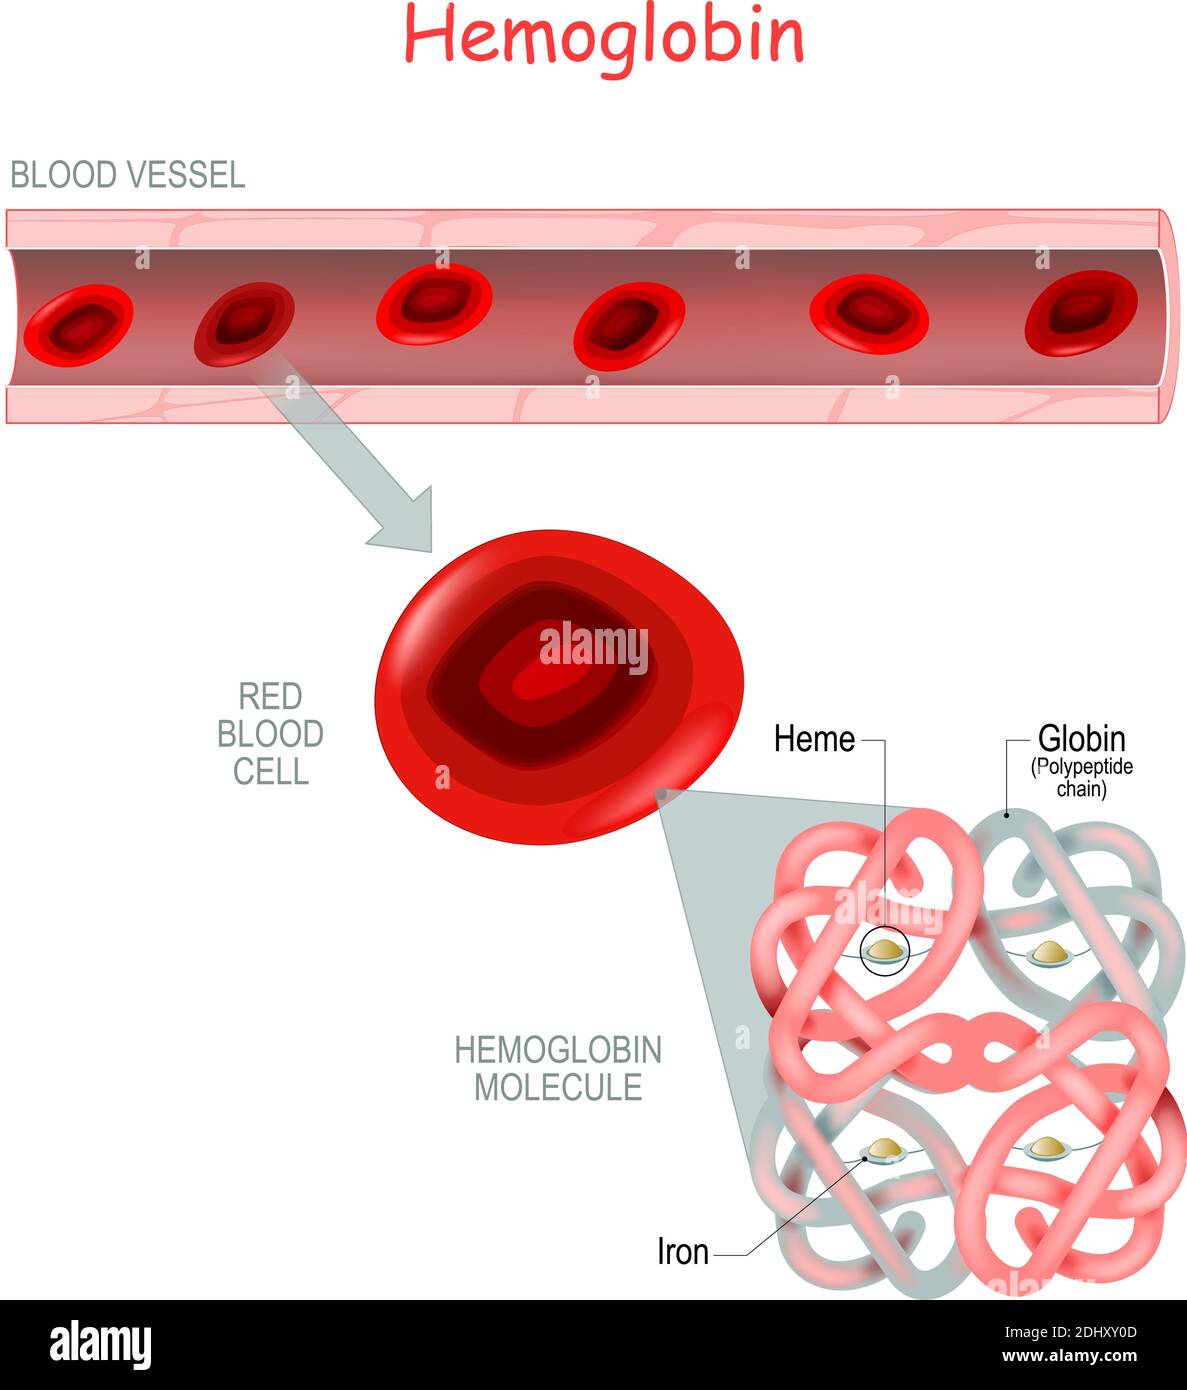 Struttura della molecola di emoglobina con l'eme (molecola di ferro e ossigeno) e la catena polipeptidica (globina). Vaso sanguigno e primo piano dei globuli rossi. Illustrazione Vettoriale